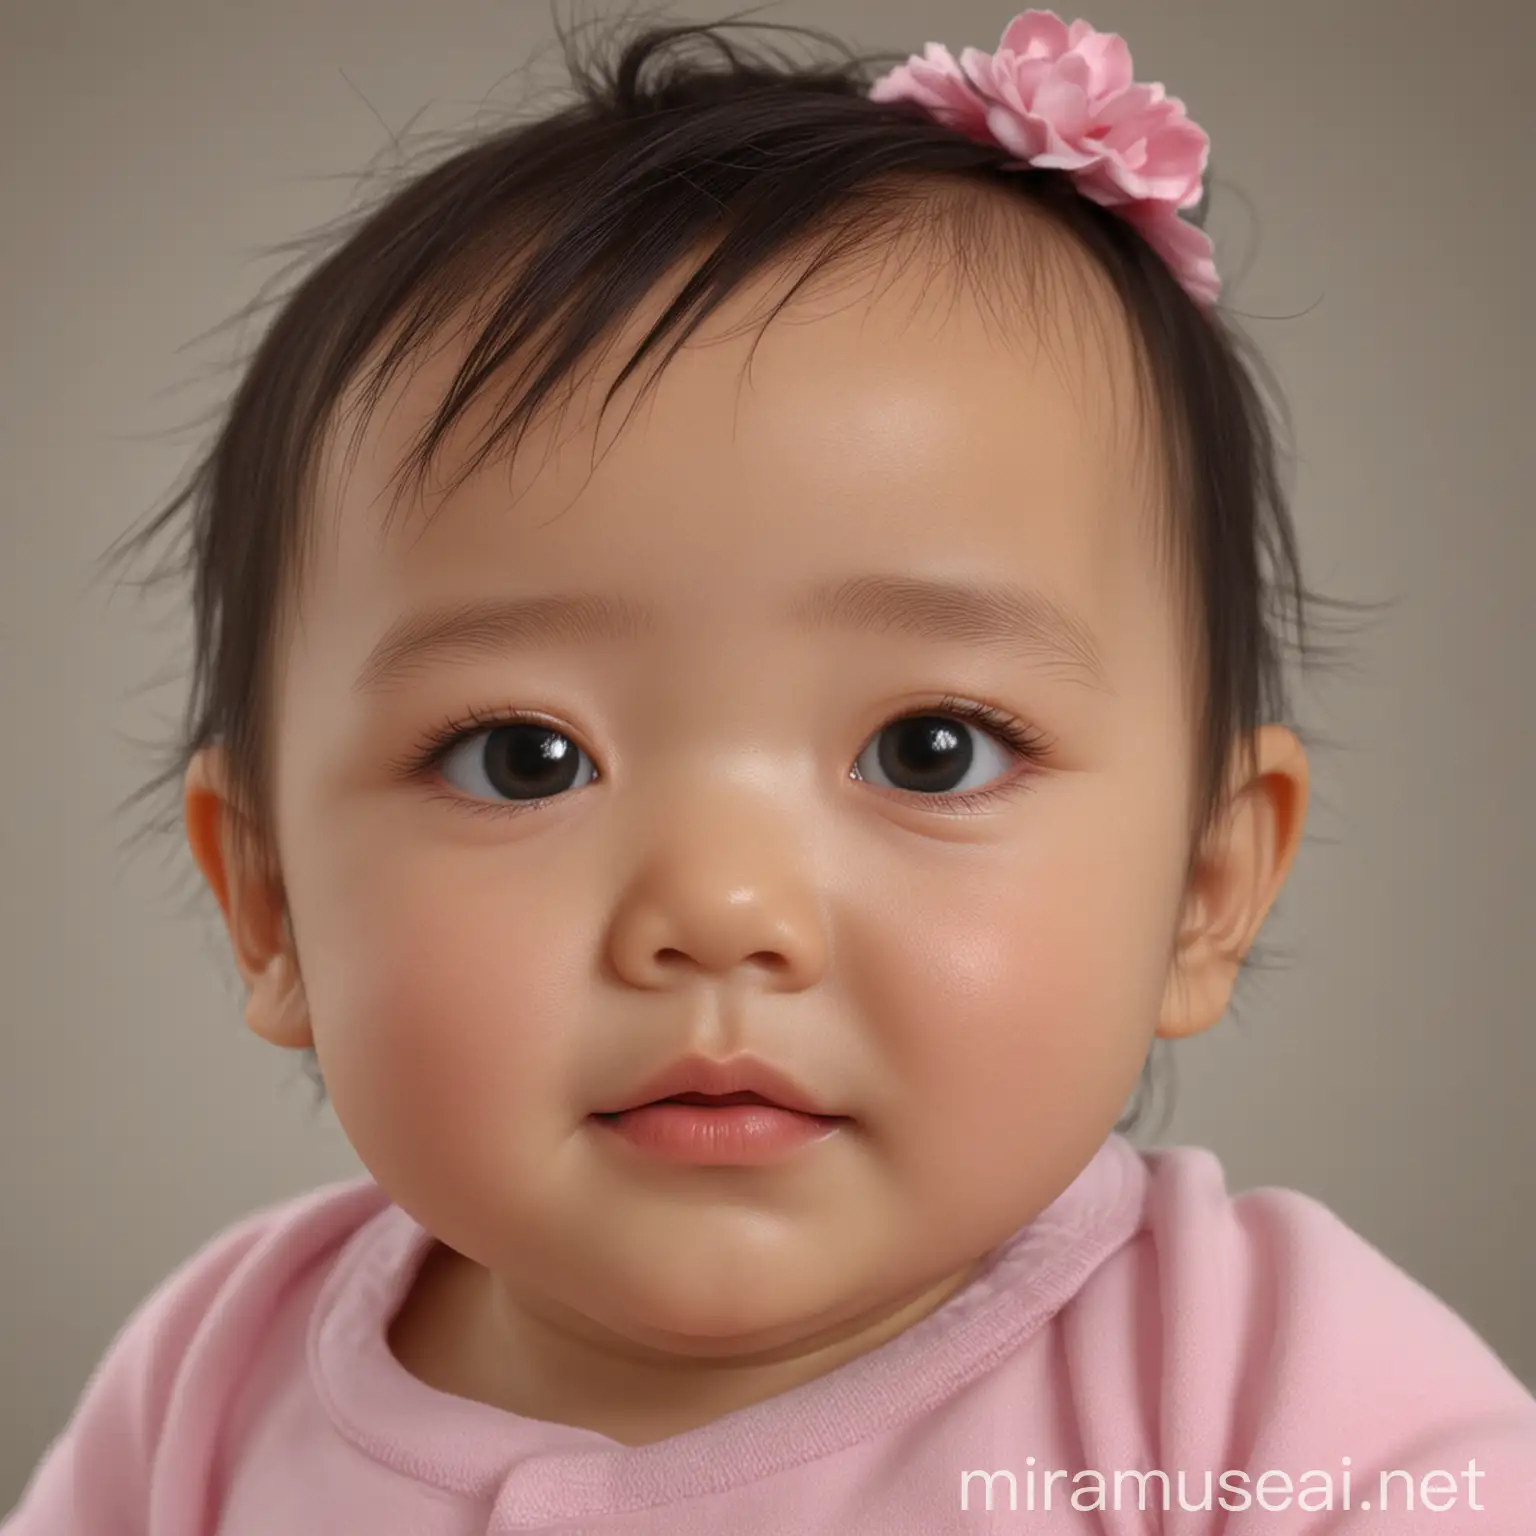 这是我娃的三维超彩图，请帮我预测一下孩子的长相，孩子是中国人